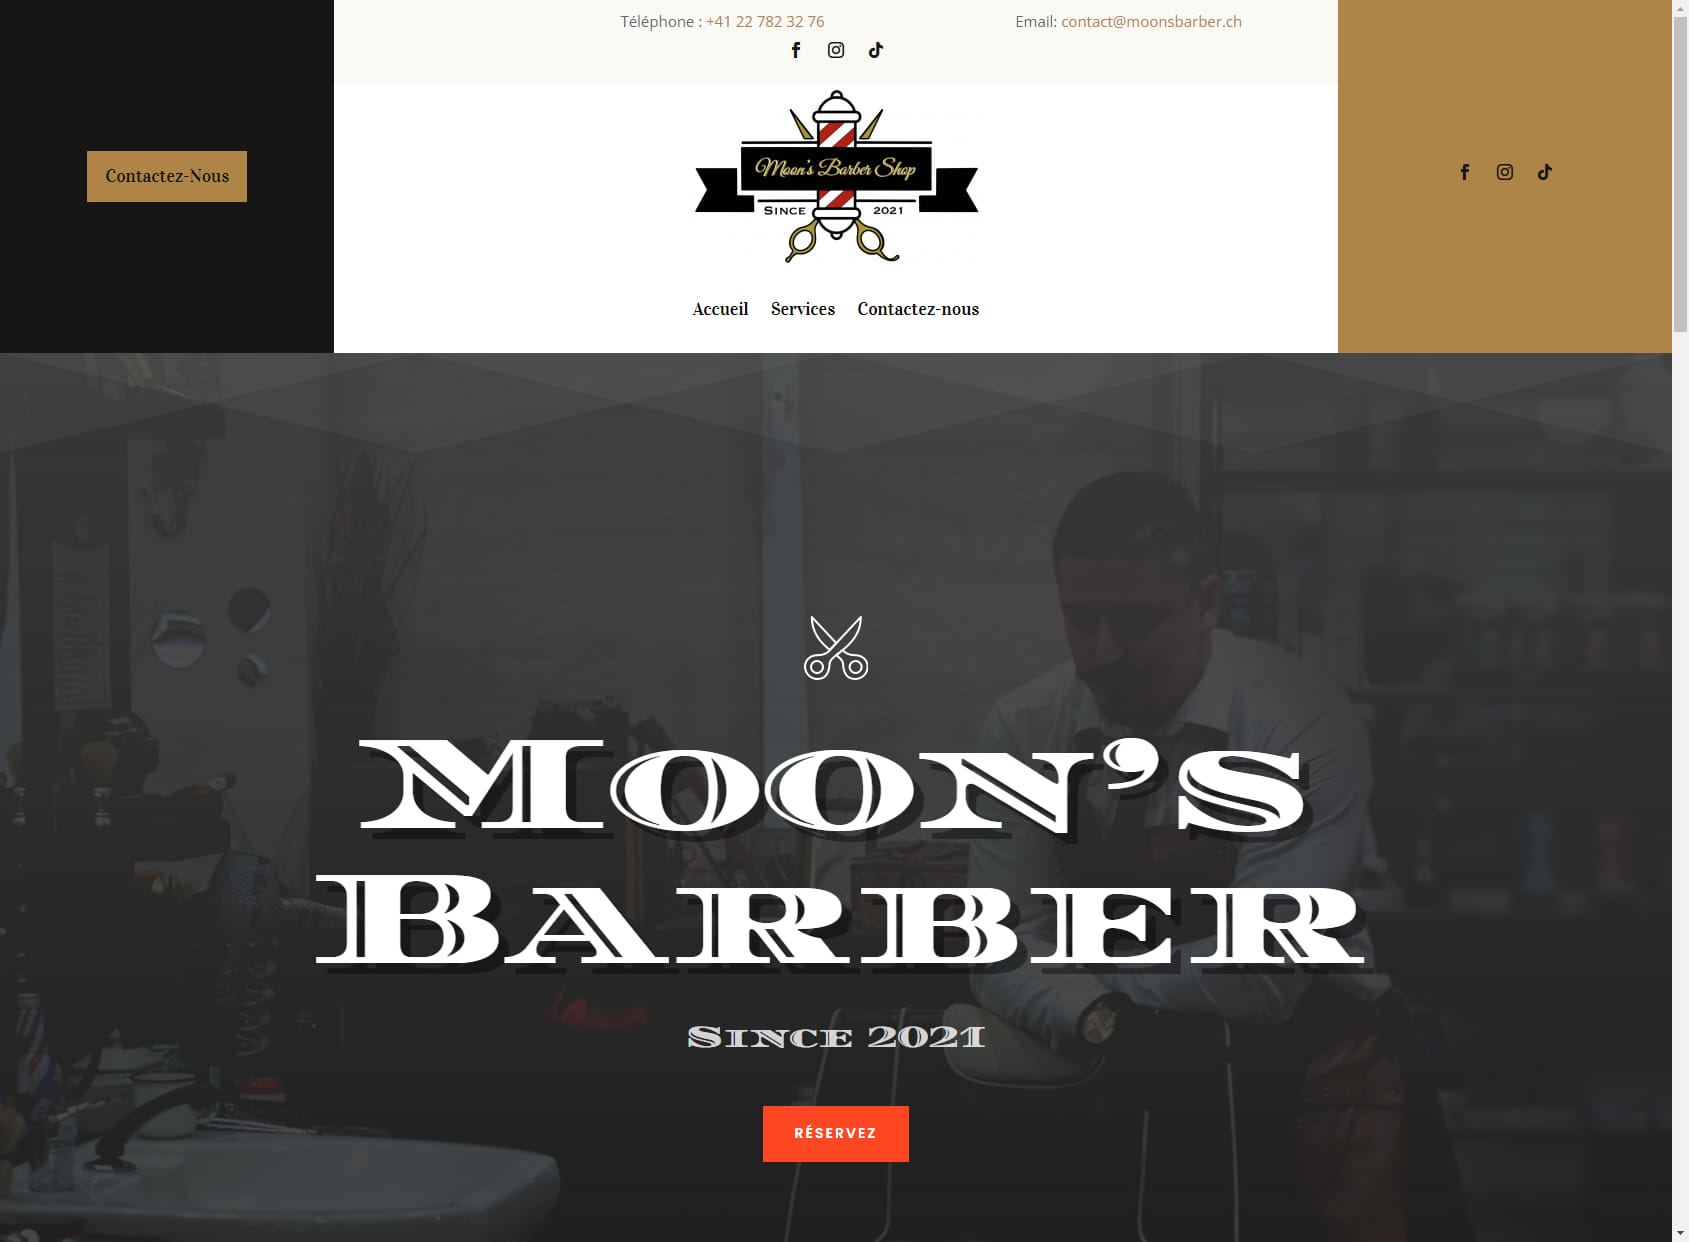 Moon's Barber Shop